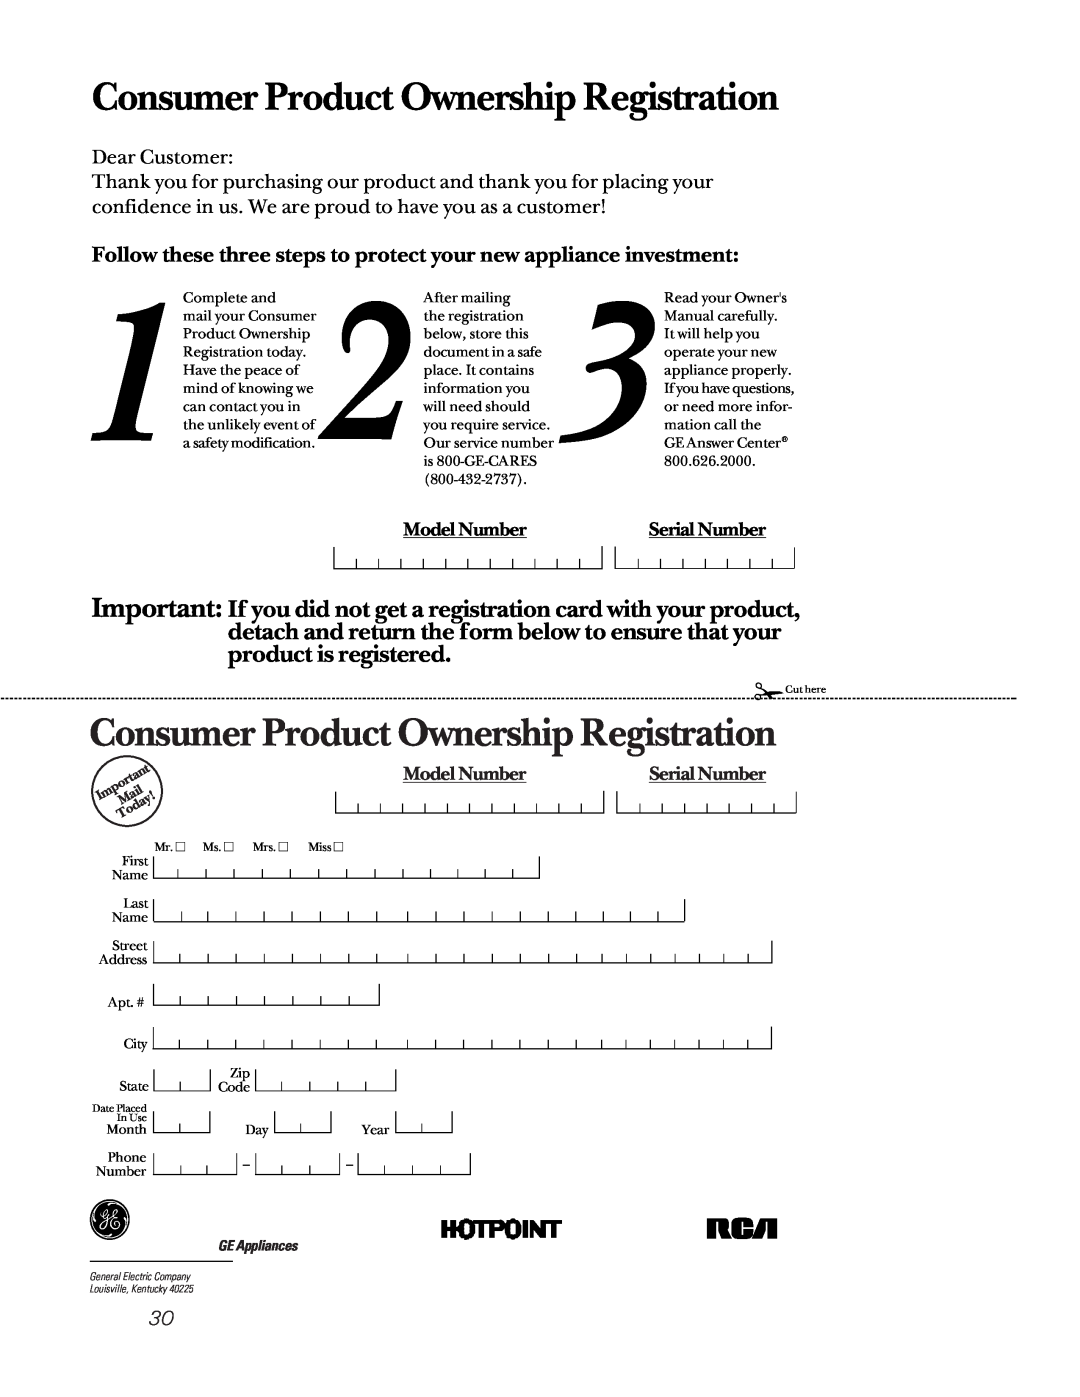 GE JBP58, JBP61, RB756, RB755, RB754 manual Consumer Product Ownership Registration, Model Number, Serial Number, GE Appliances 